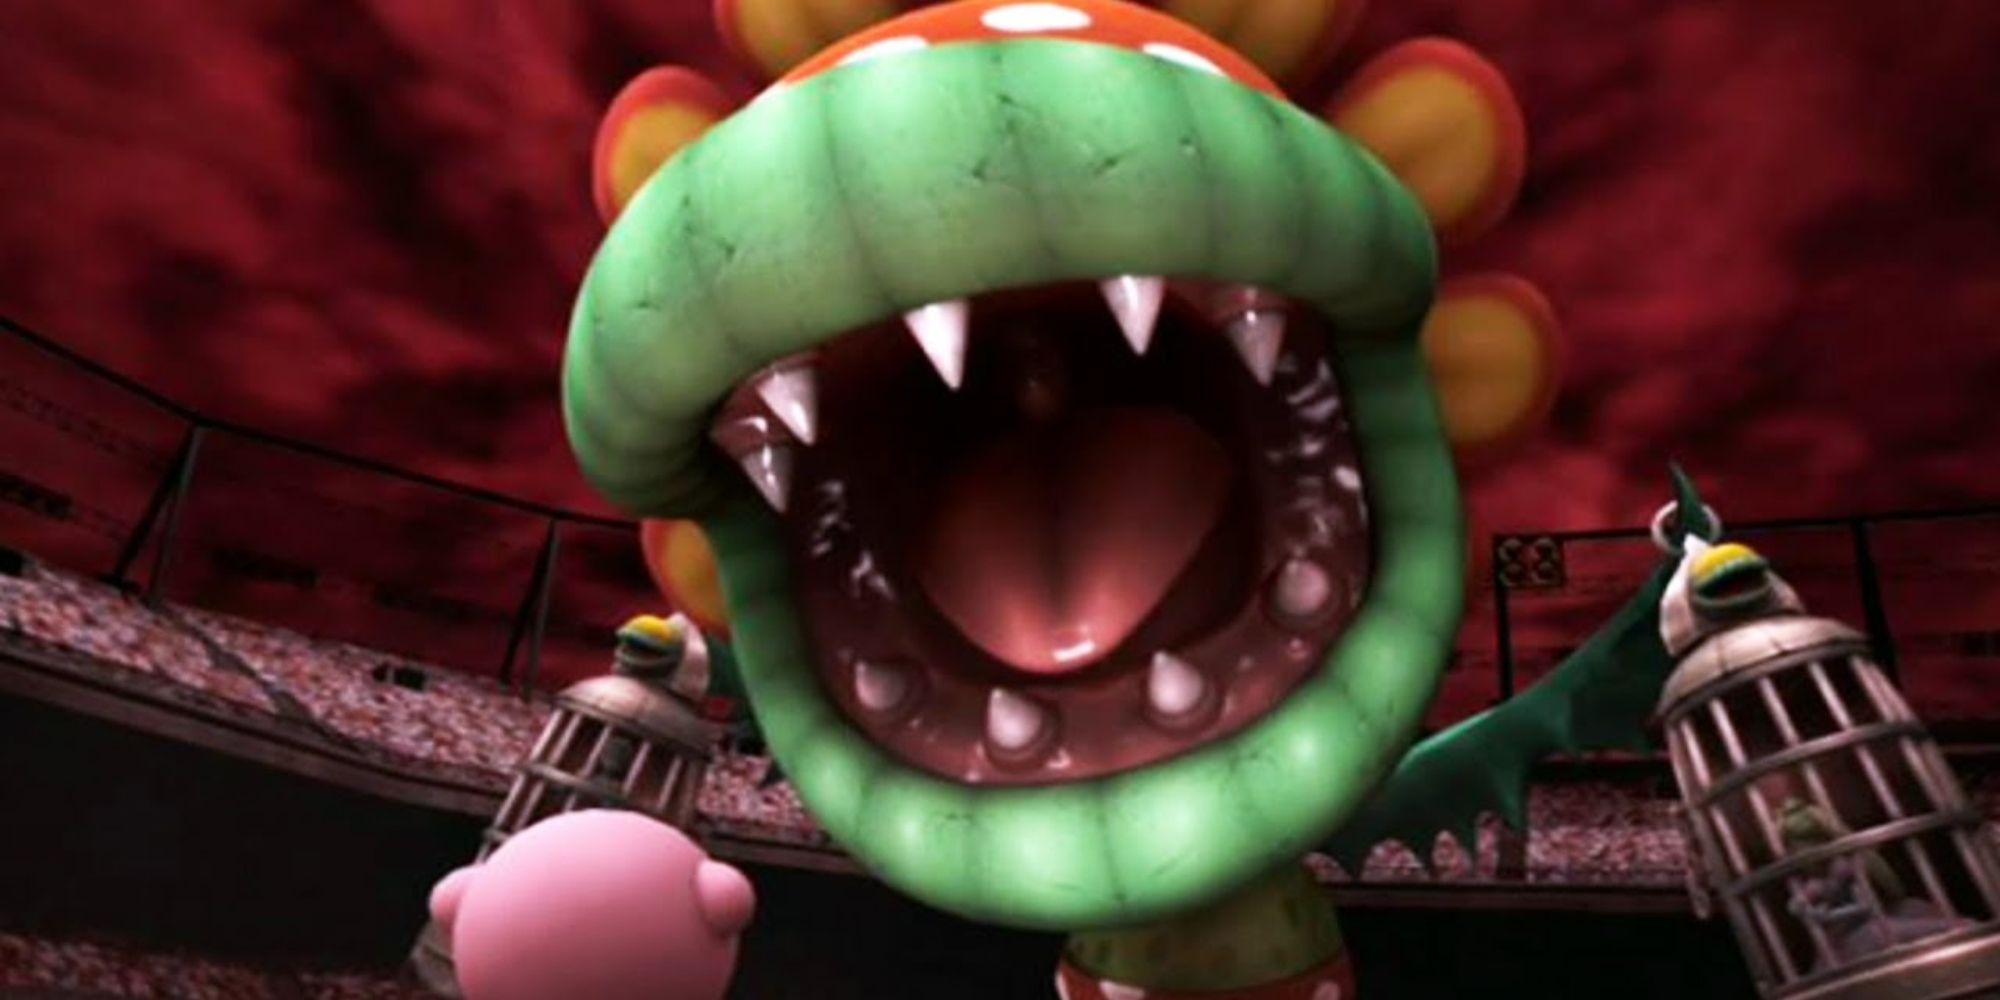 Petey Piranha roaring at Kirby in Smash Bros Brawl